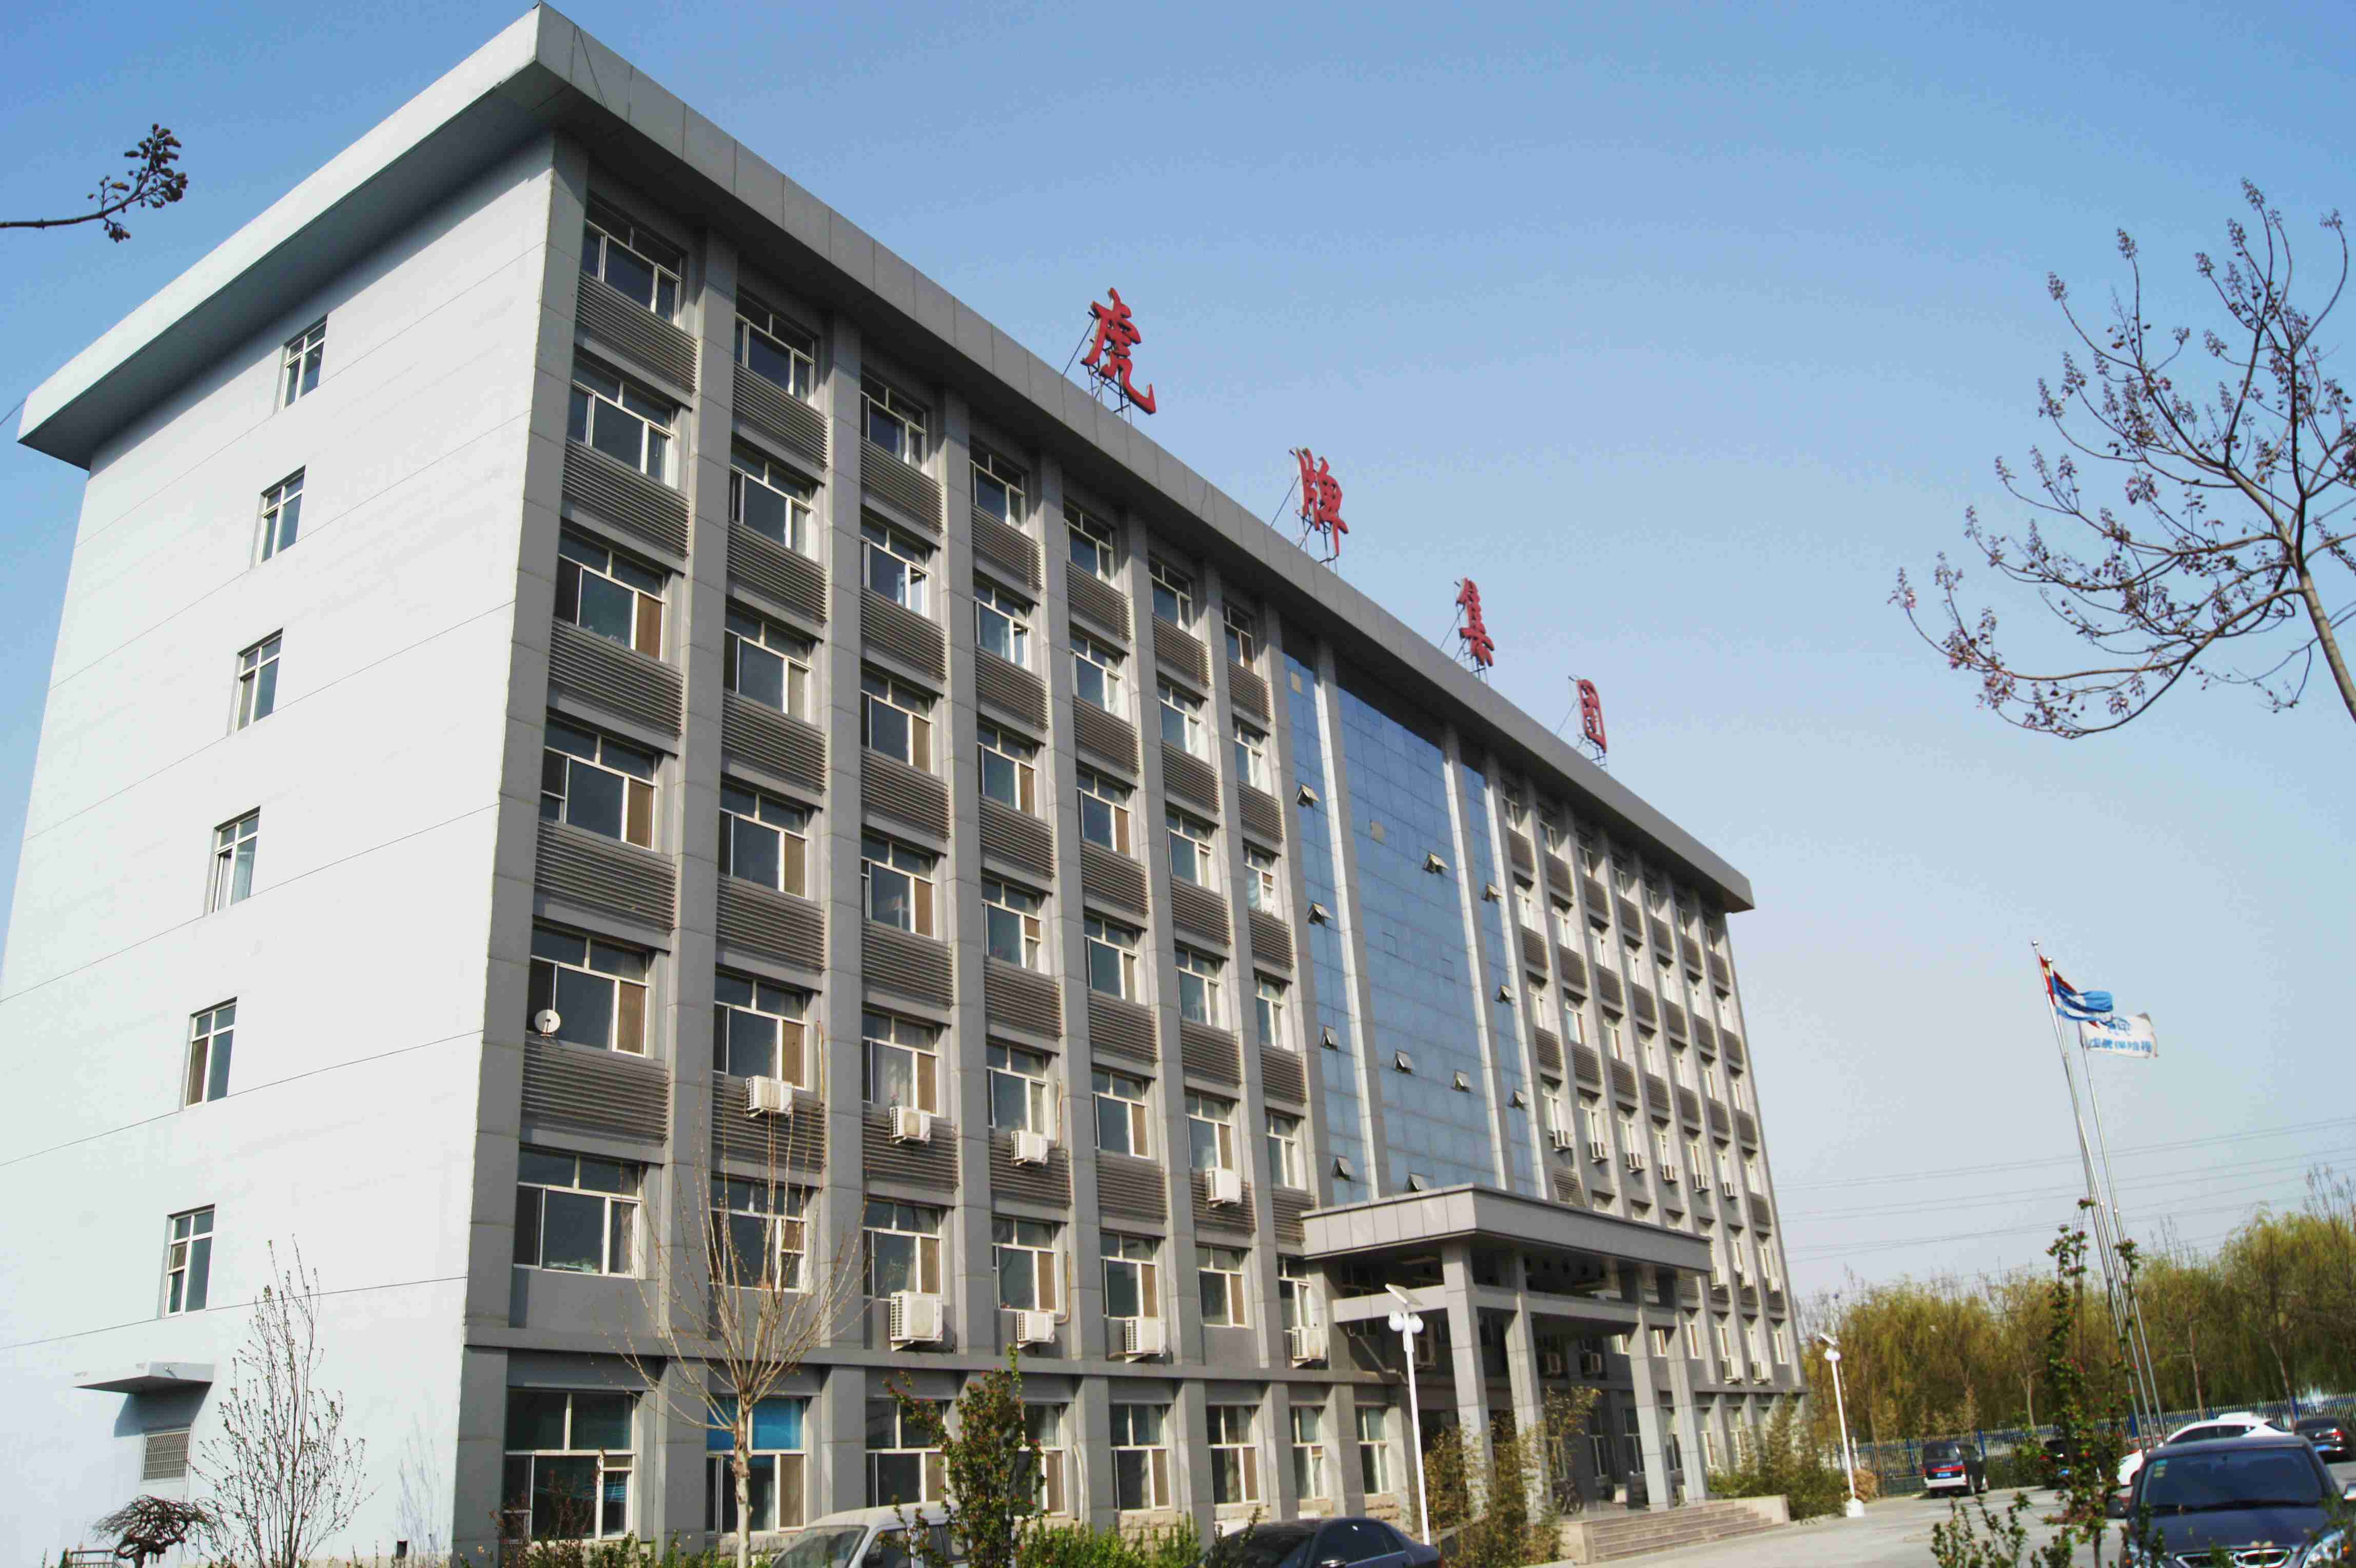 Hebei Hupai Aodi Cabinet Industry Co.,Ltd.